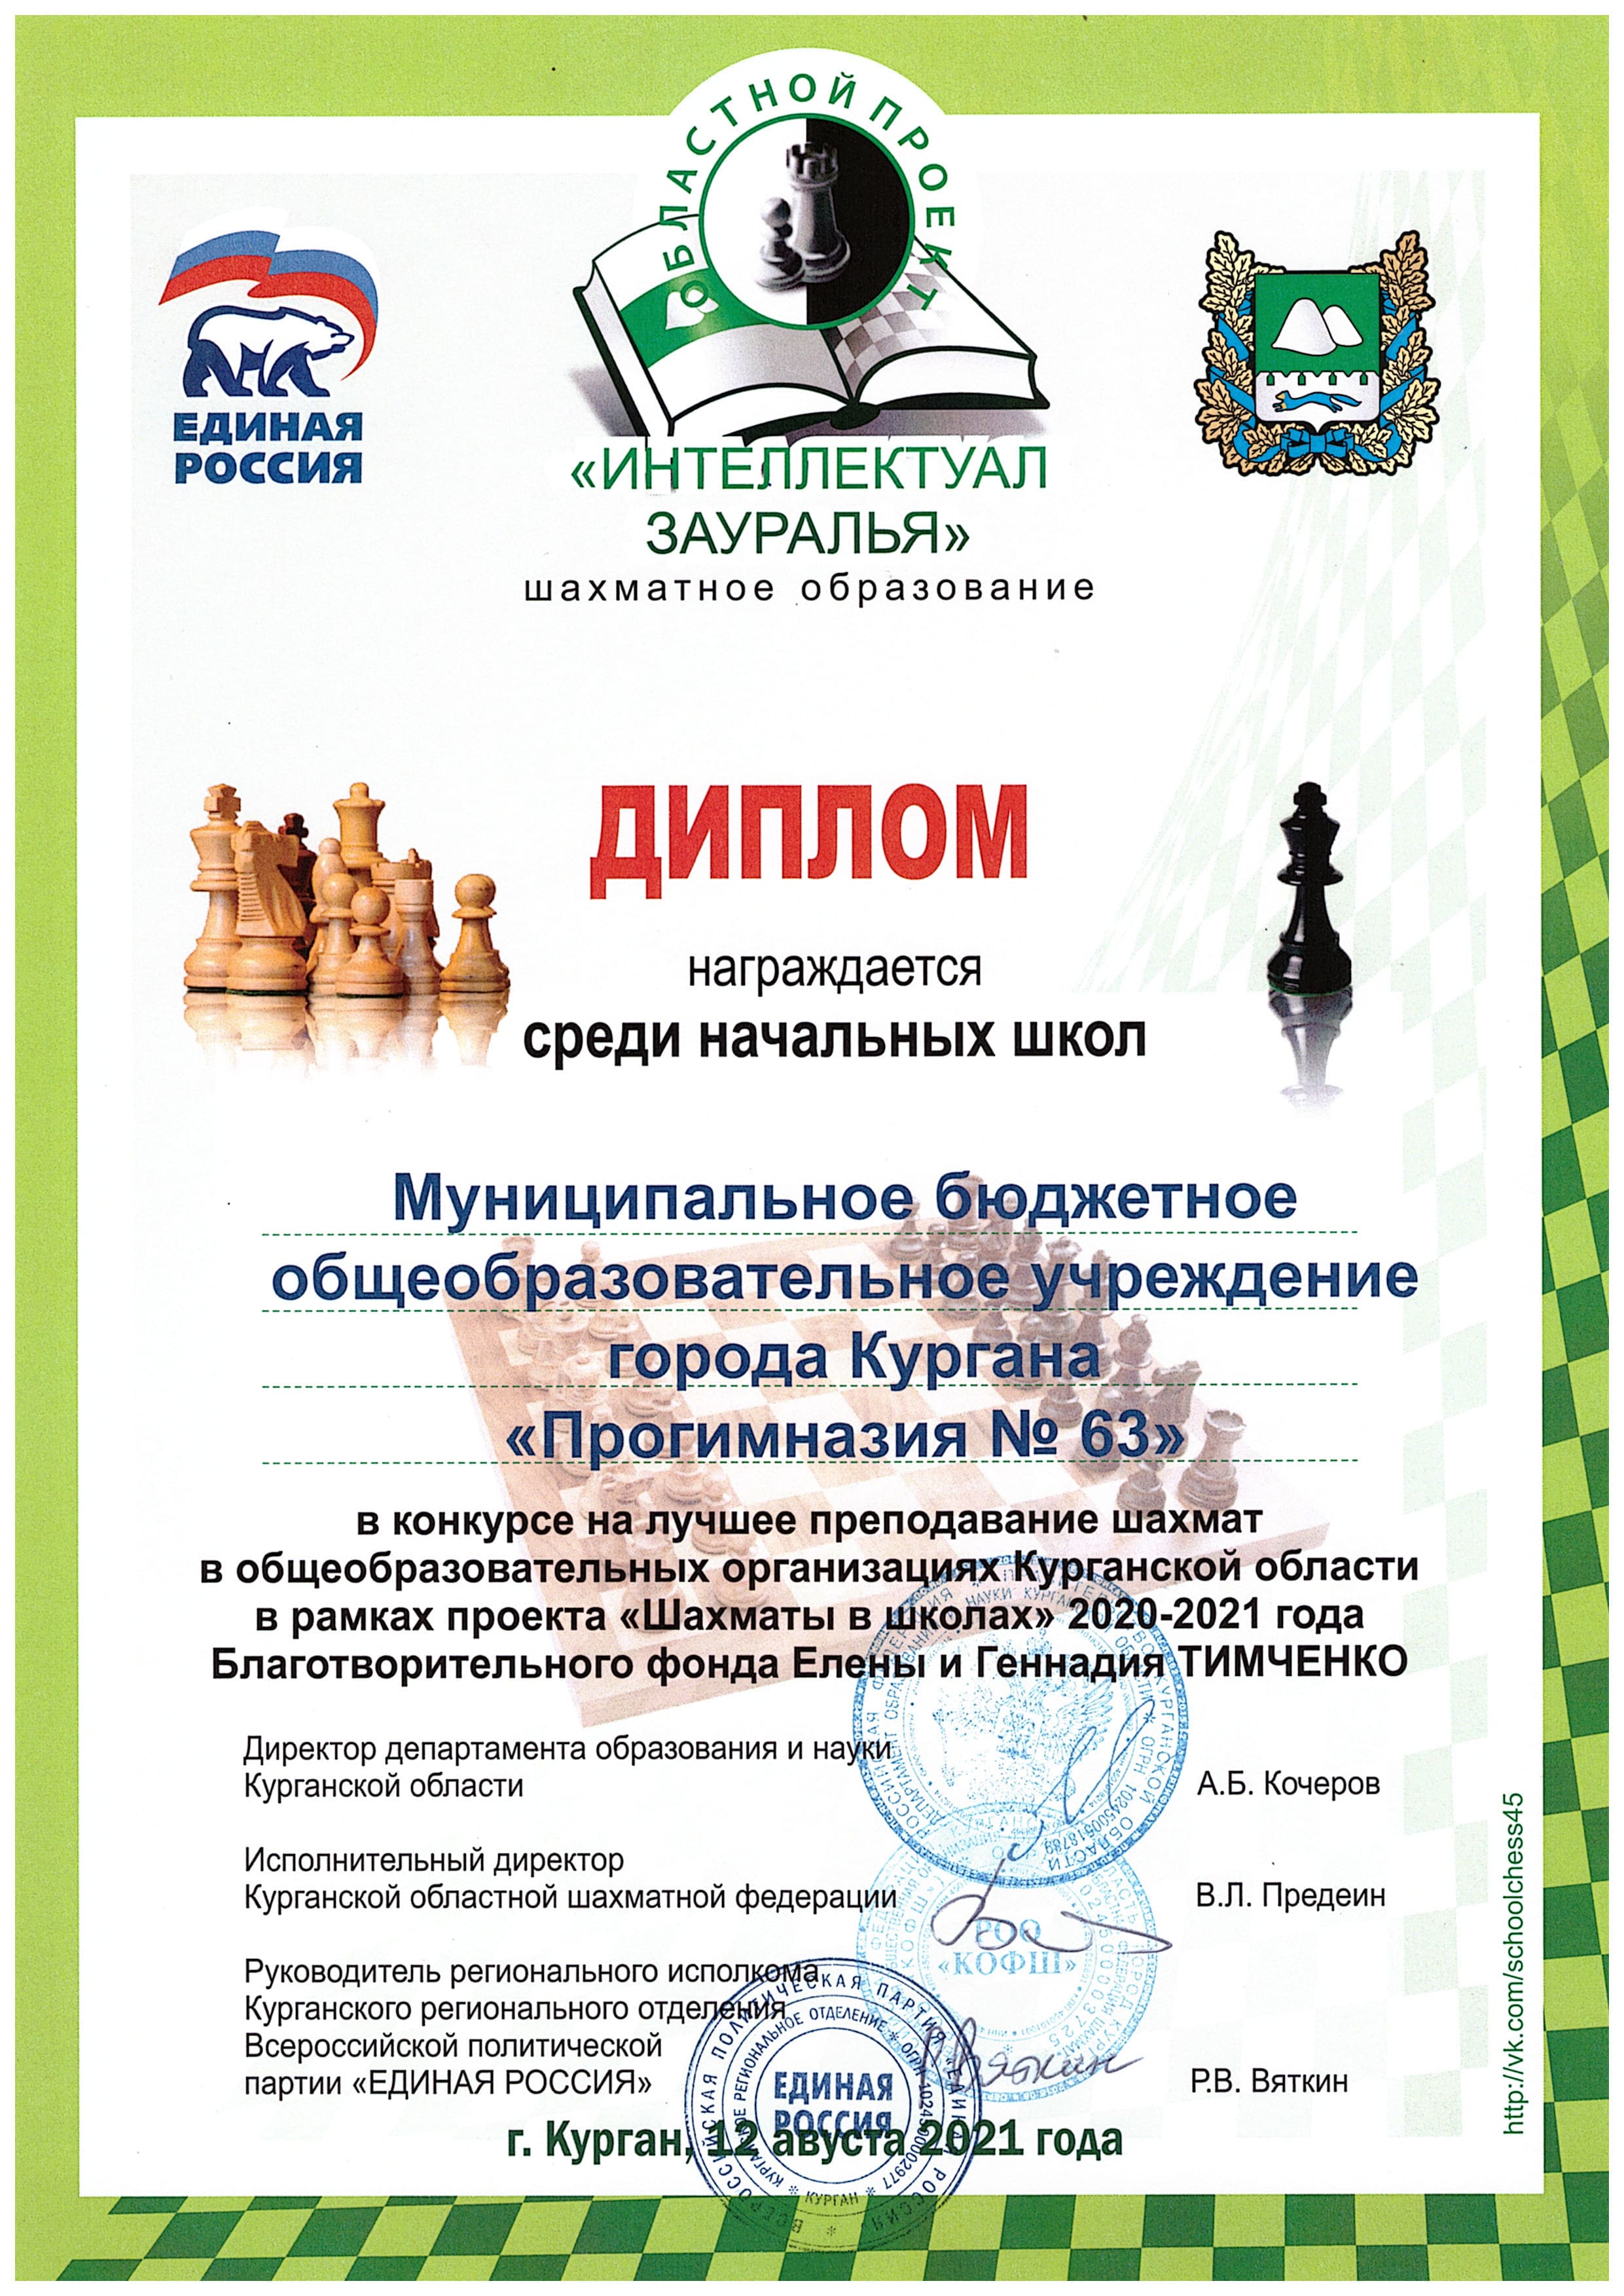 Конкурс на лучшее преподавание шахмат в общеобразовательных организациях